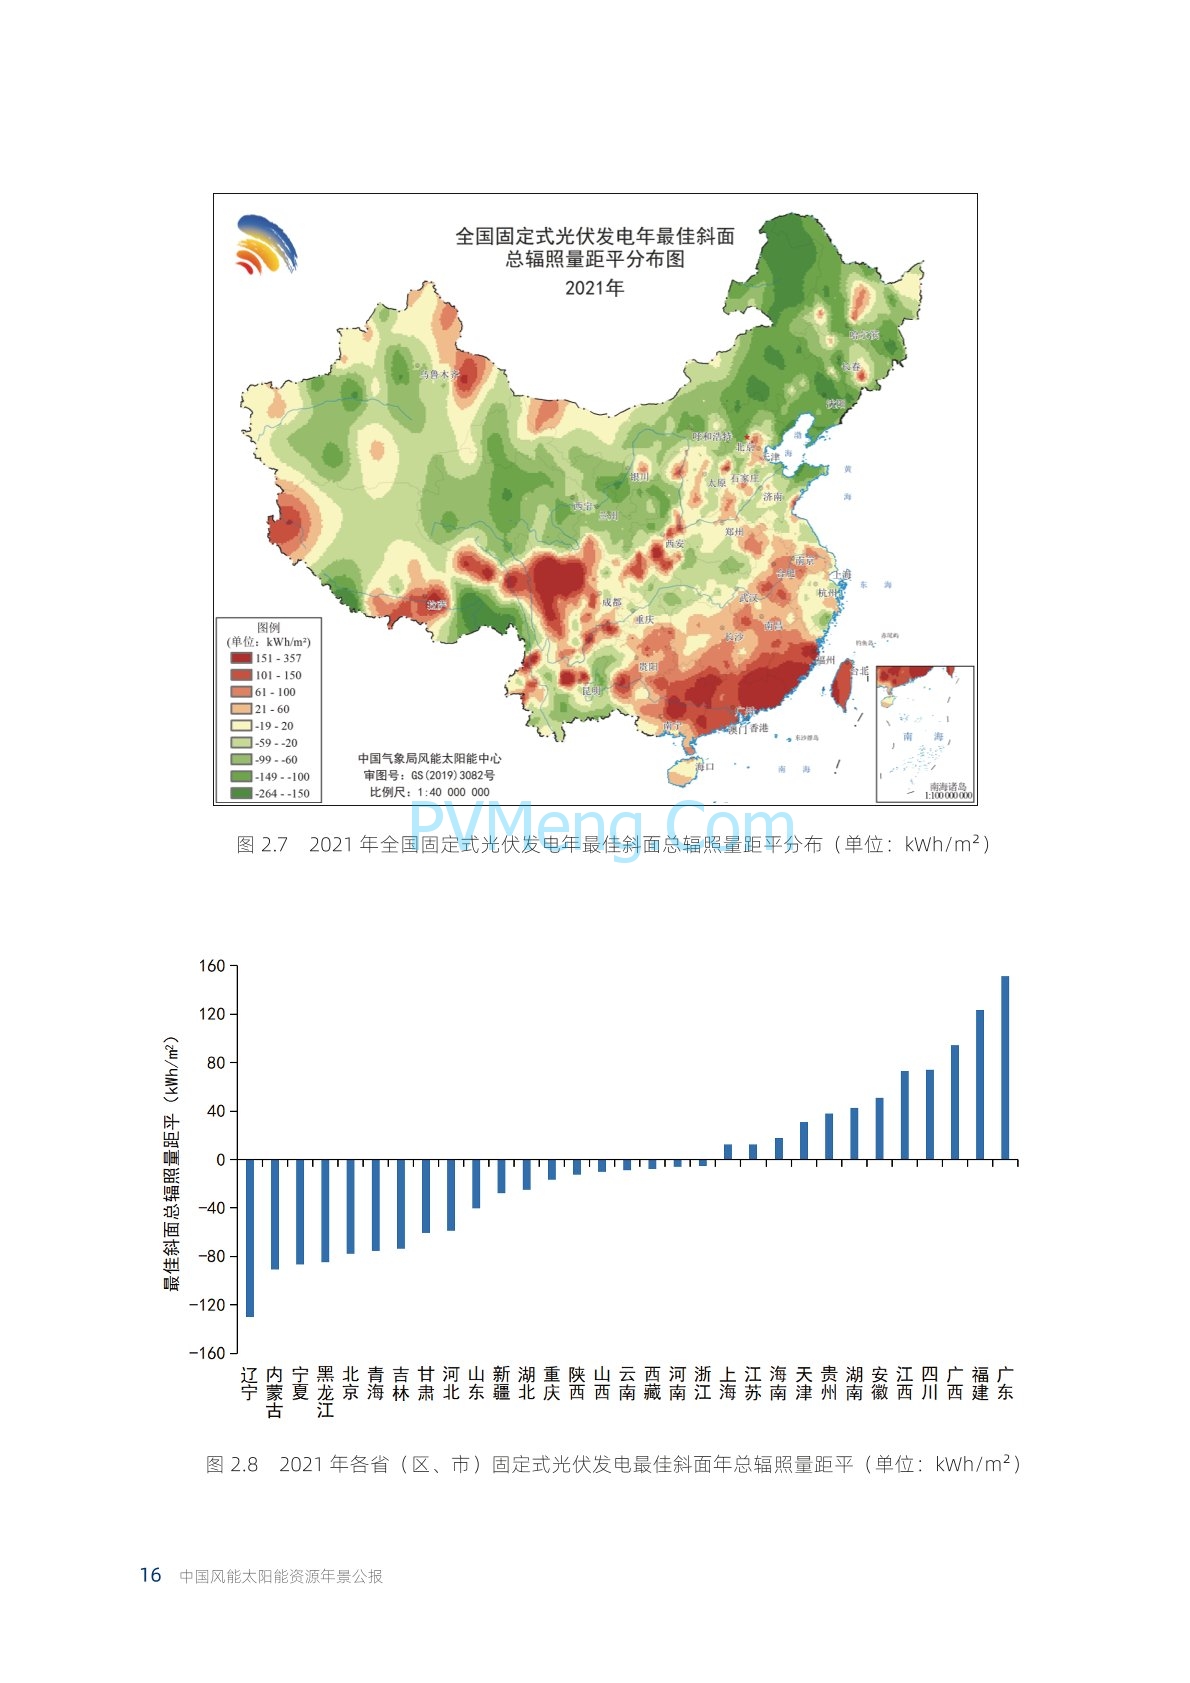 中国气象局2021年中国风能太阳能资源年景公报20220428